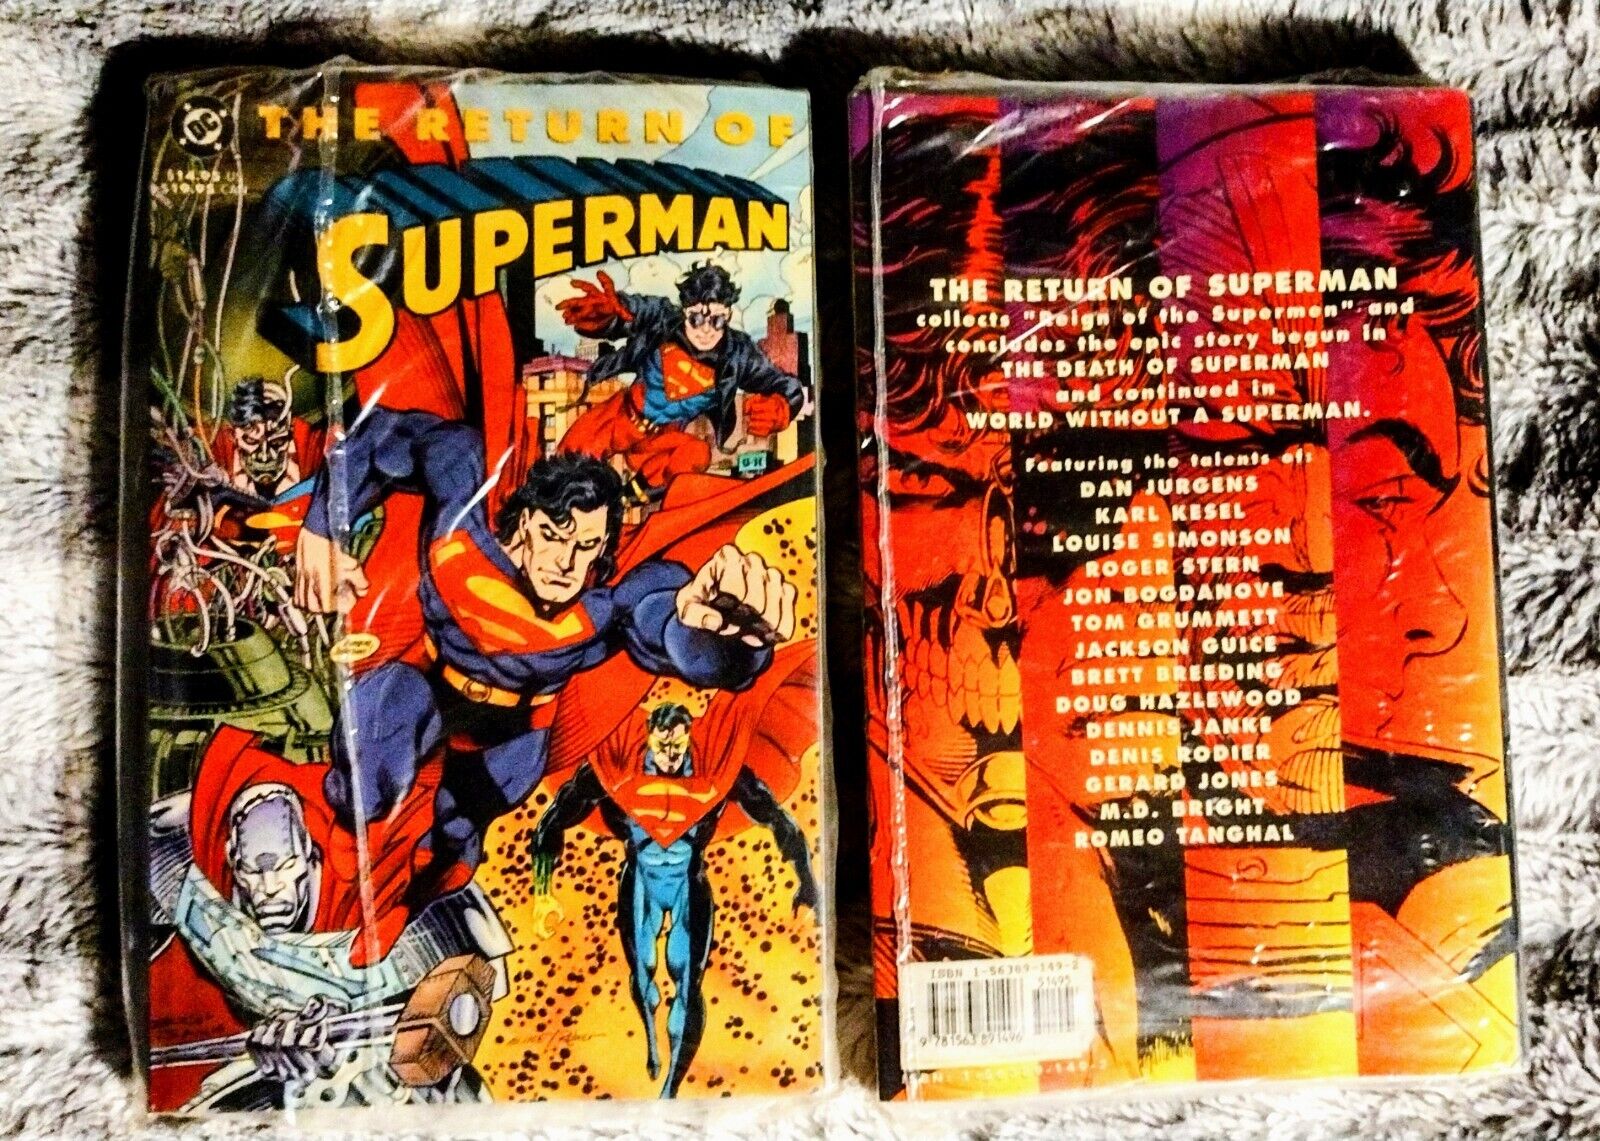 The Return of Superman - DC Comics